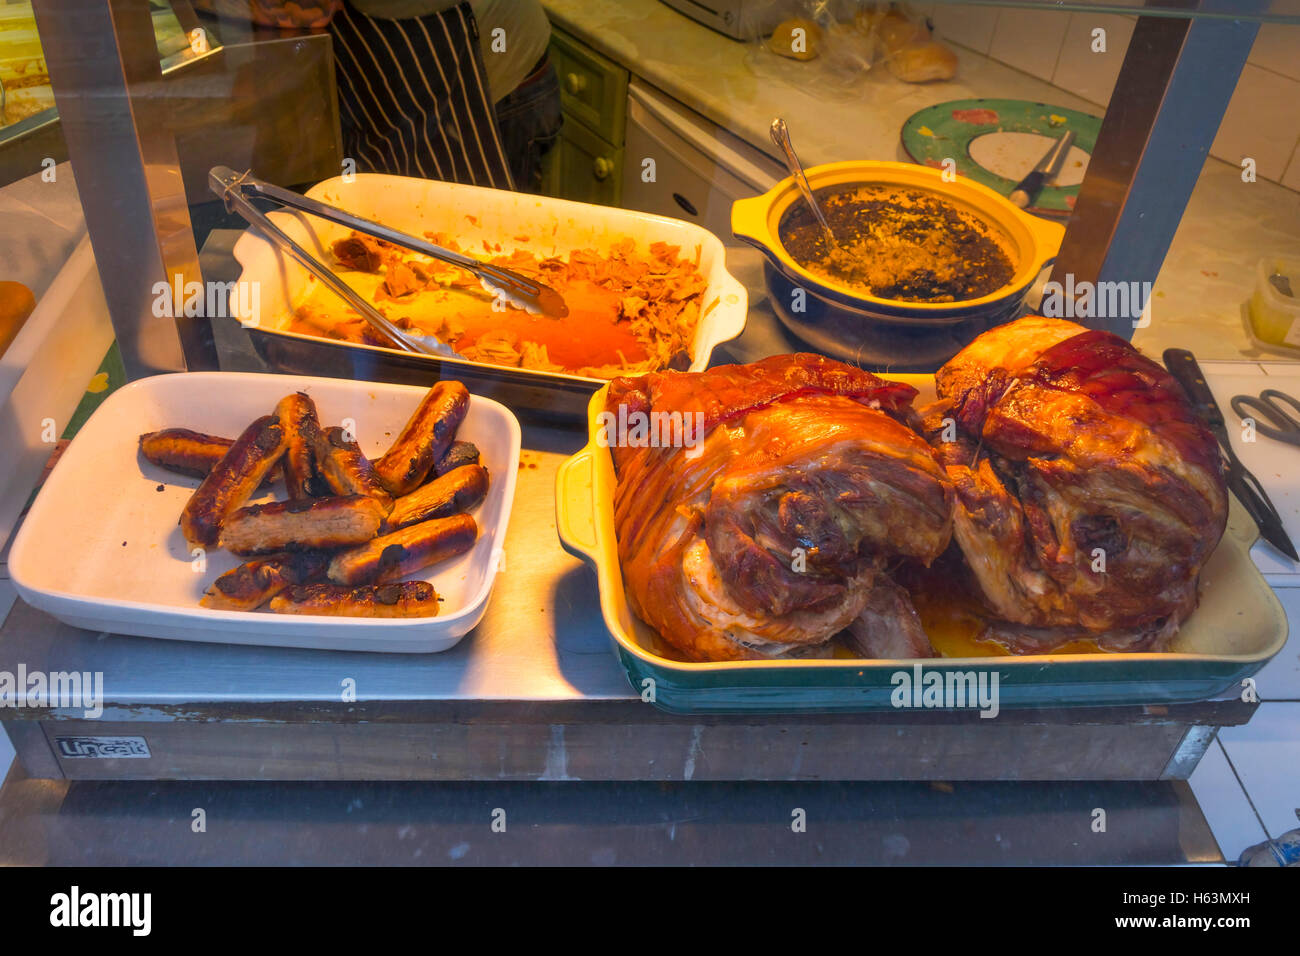 Les joints fraîchement rôtis de viande de porc et saucisses dans une vitrine de la vente de sandwichs chauds. Banque D'Images